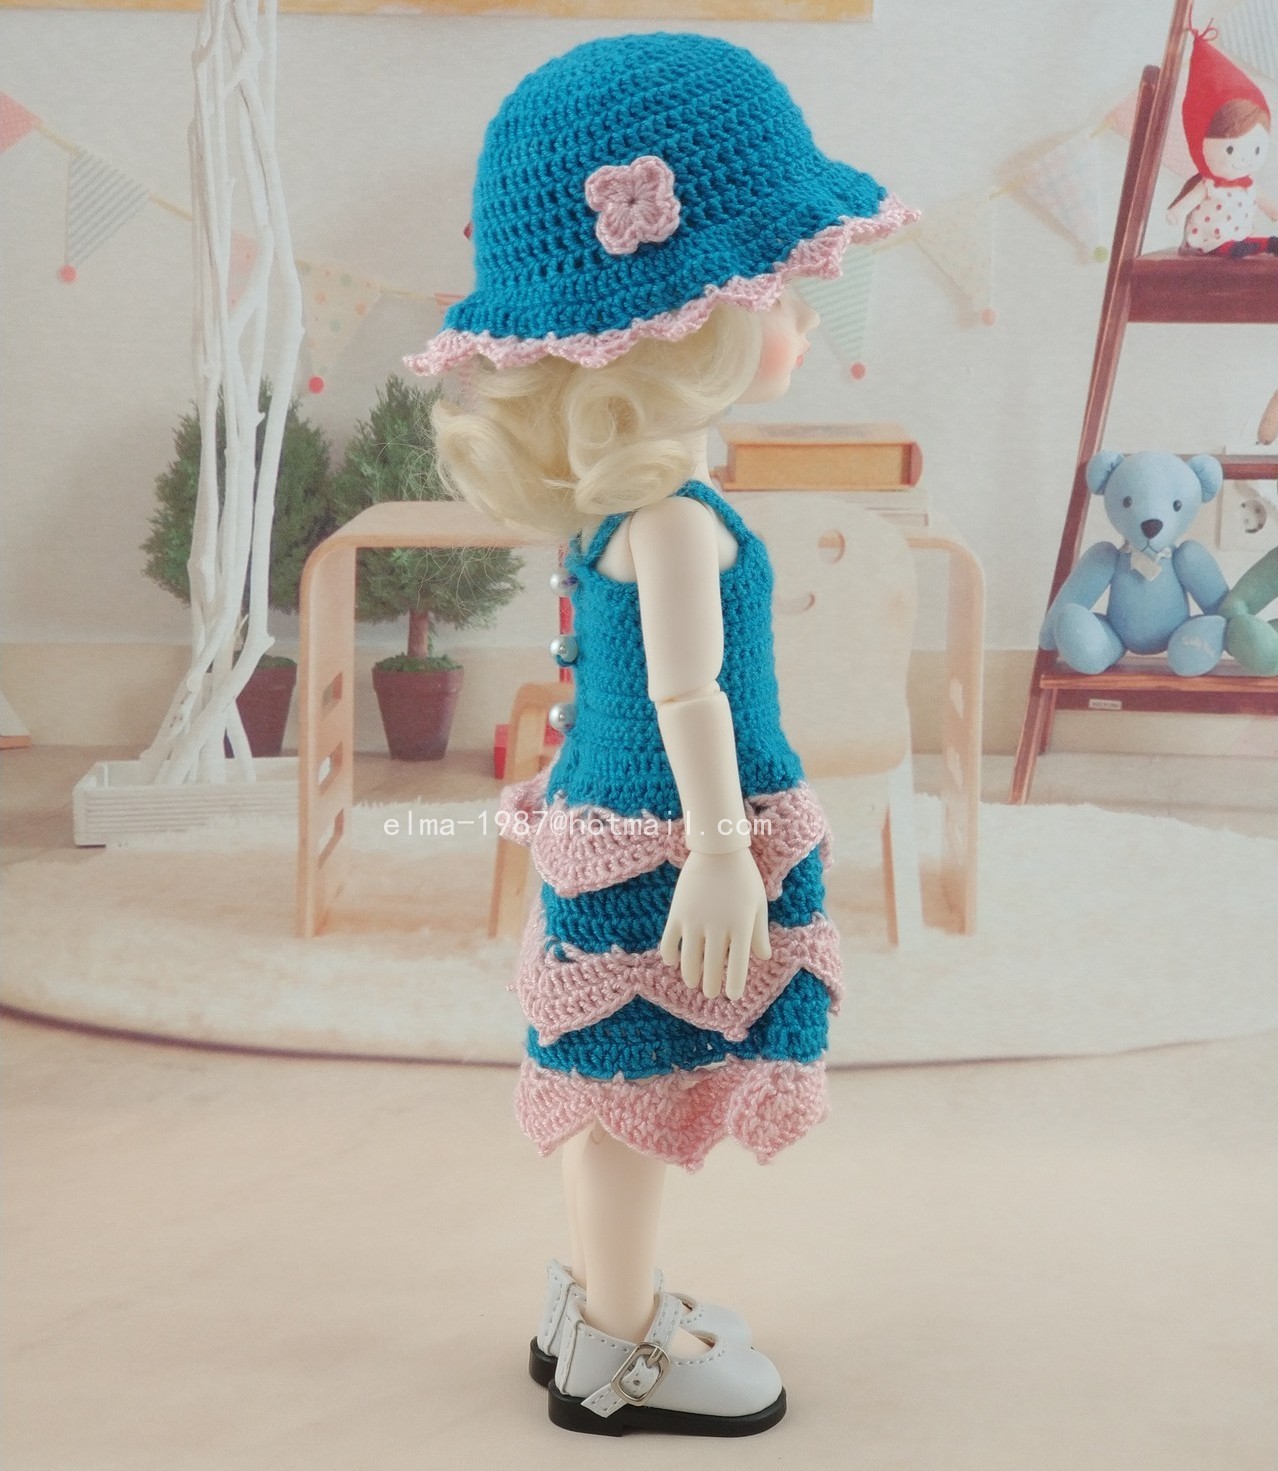 crochet-blue-dress-for-bjd-7.jpg